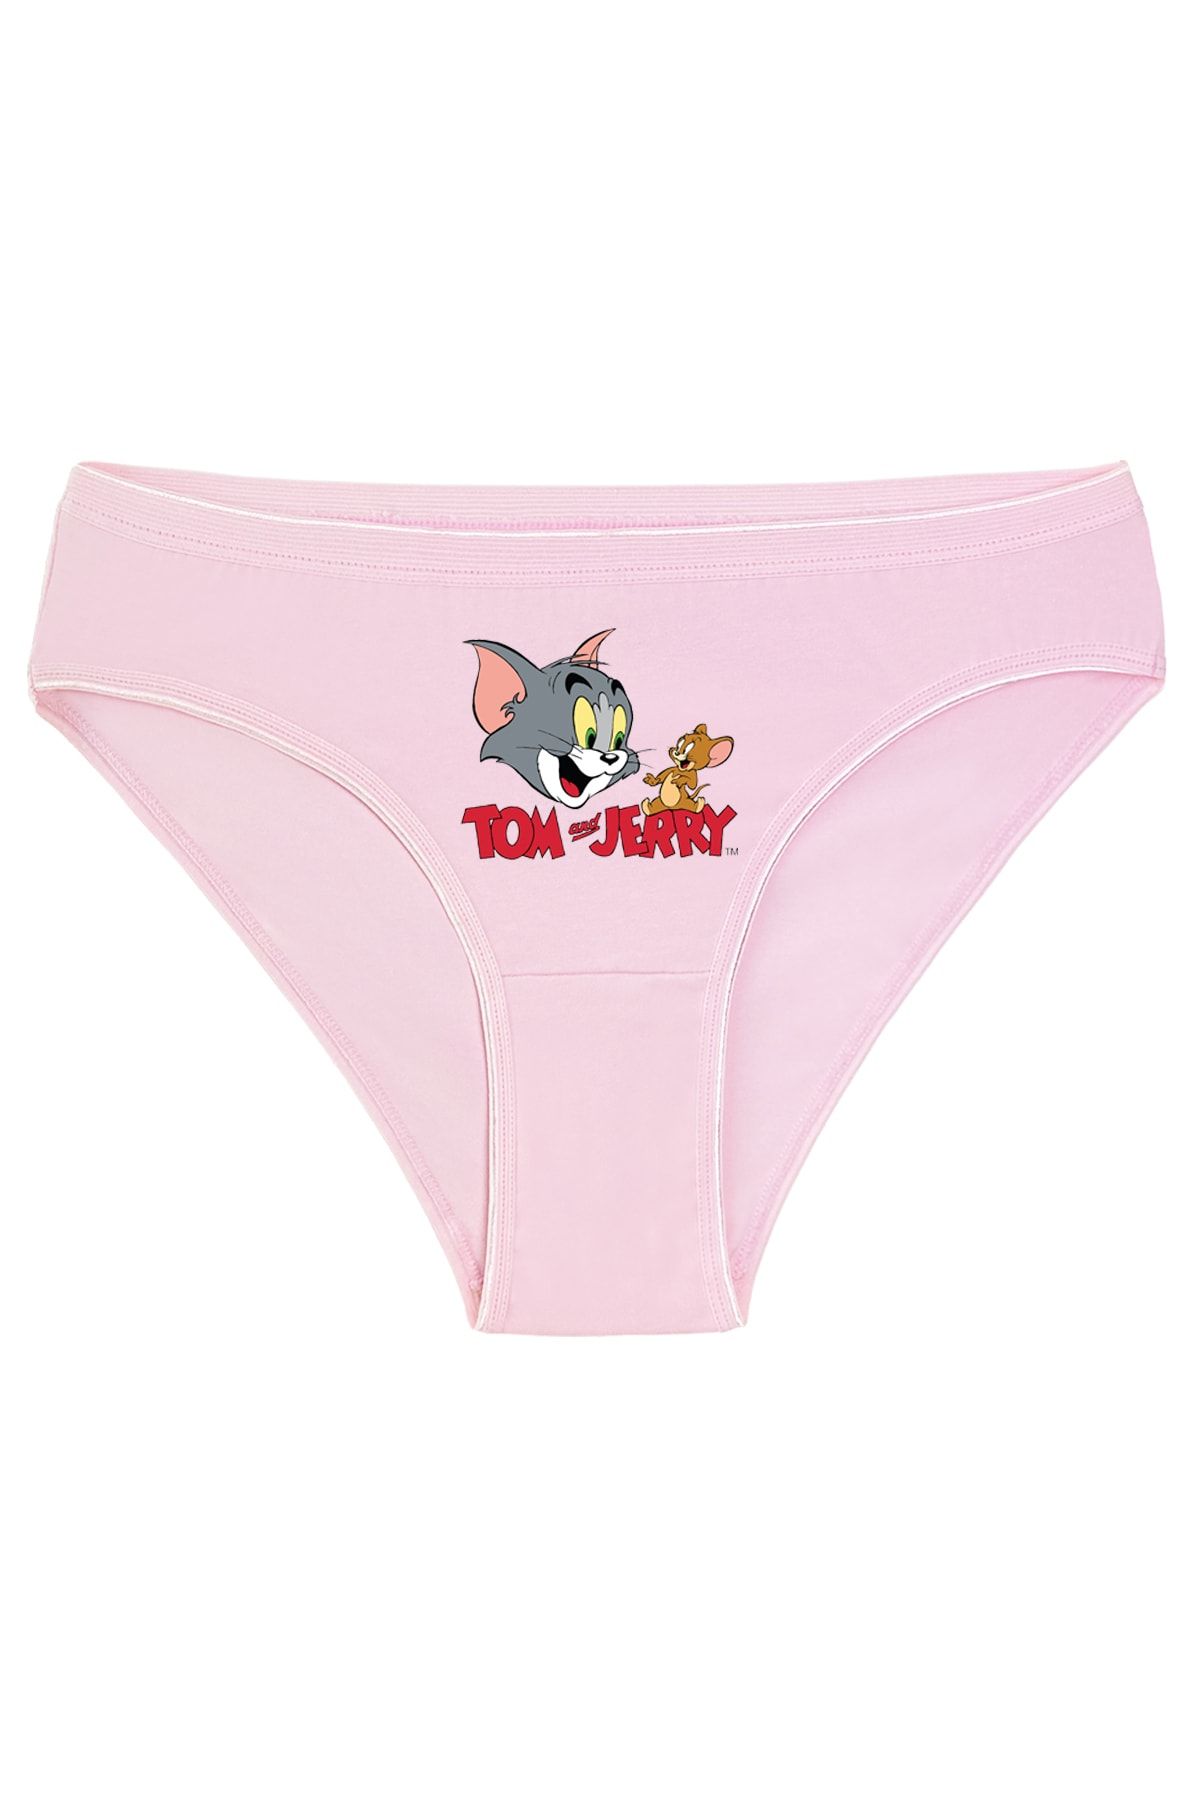 Kio Tasarım Tom Ve Jerry Külot Kadın Pembe Sevgililer-arkadaş-doğum-günü Hediyesi Pamuklu Kilot Don Bikini Kesim